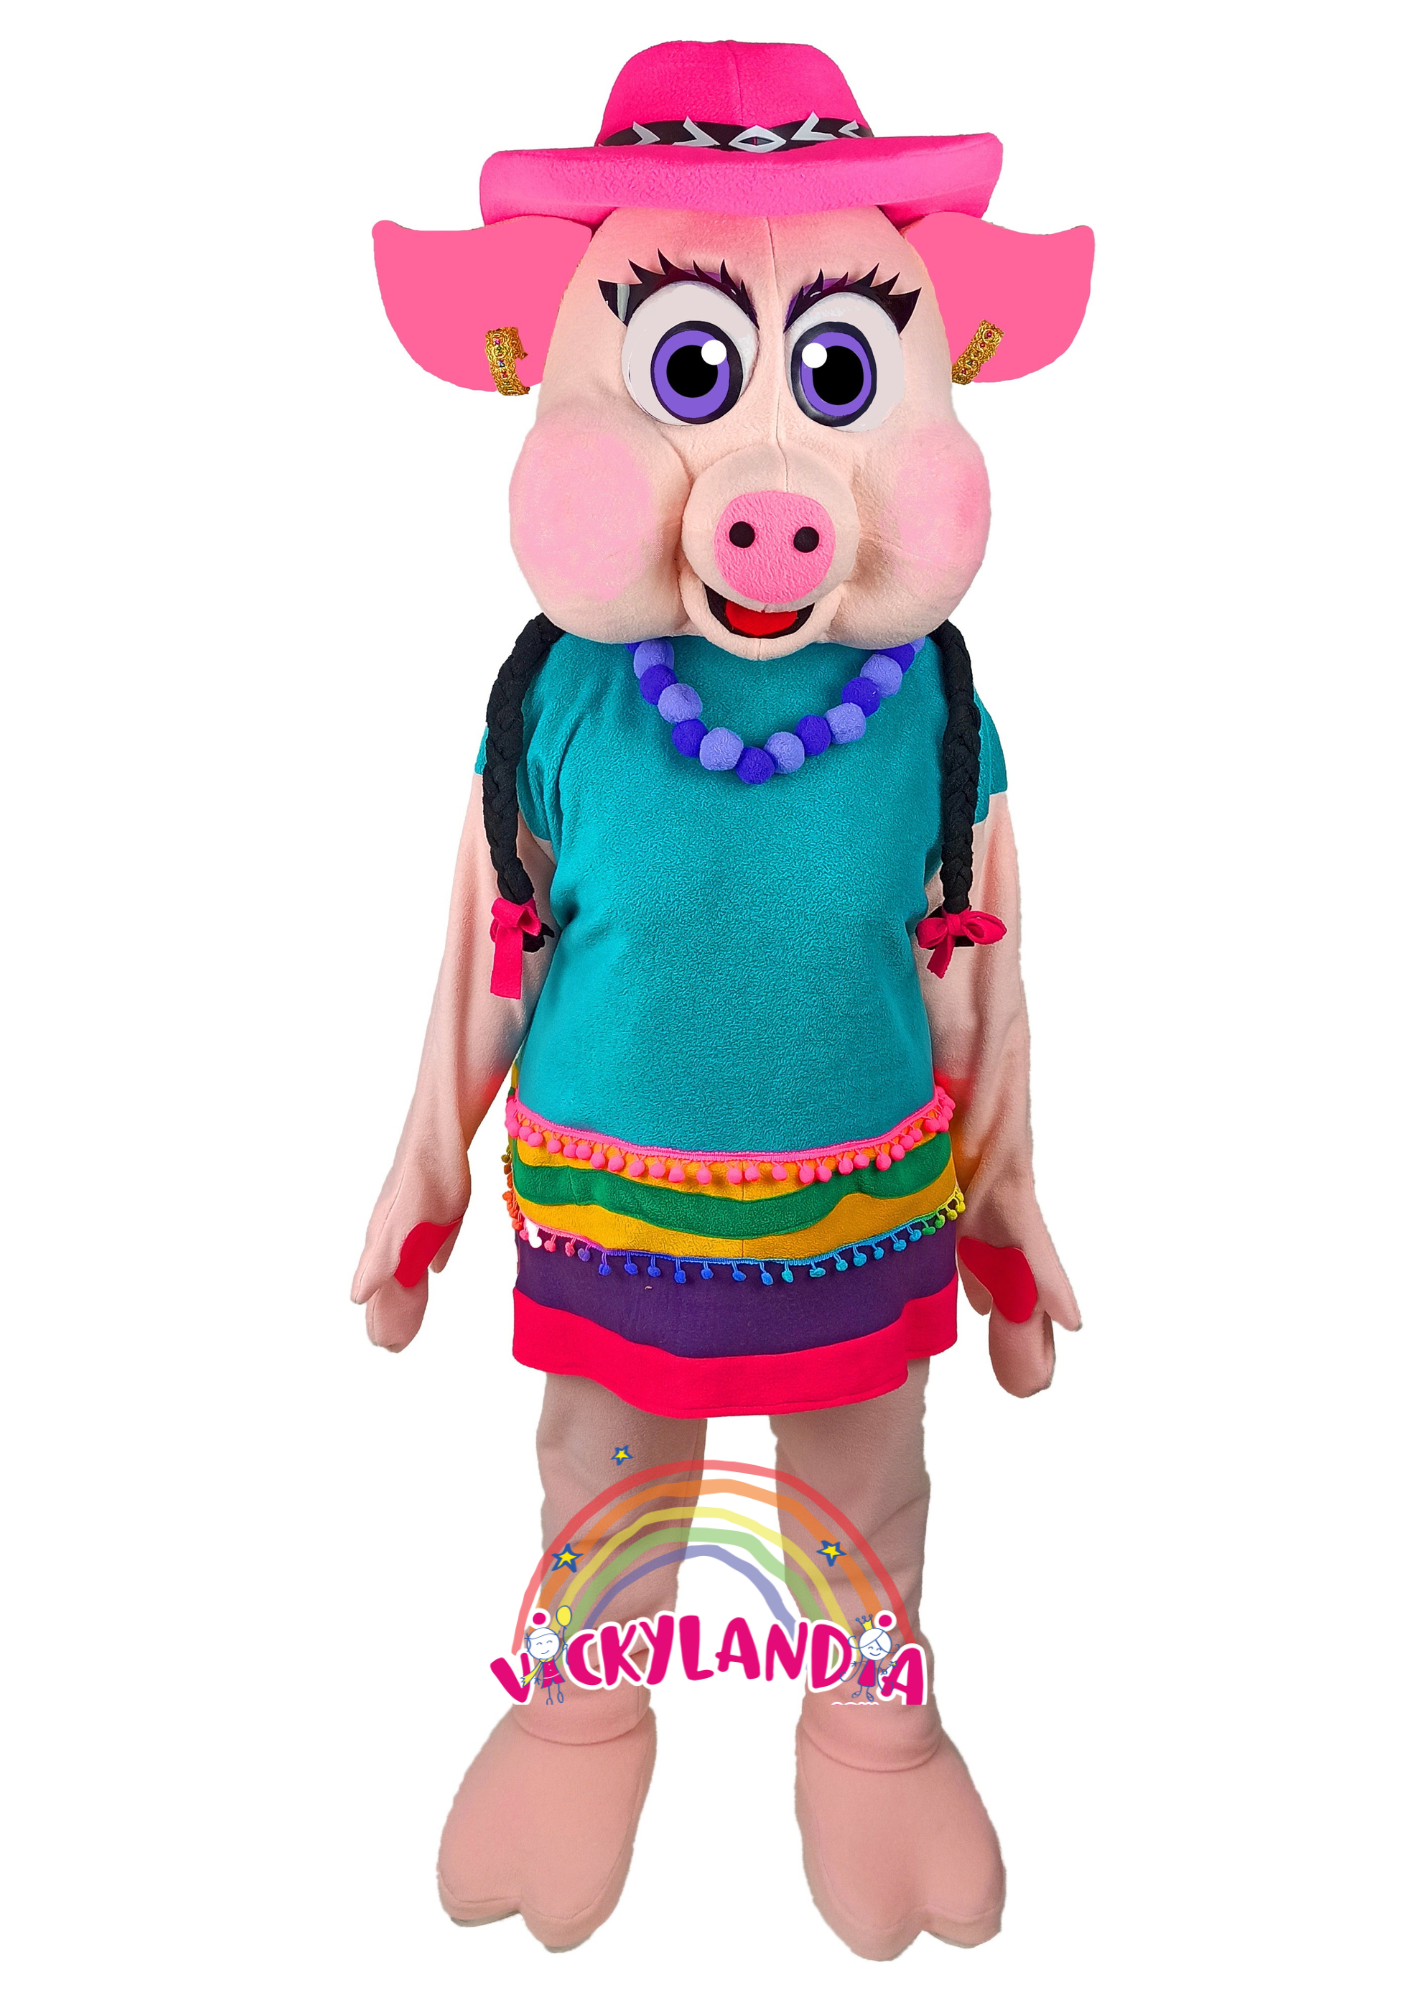 Descubre la magia de nuestro muñeco publicitario de Chancha en Vickylandia. Son disfraces cabezones perfectos para fiestas infantiles, shows, cumpleaños, estrategias publicitarias, espectáculos, cabalgatas y cualquier tipo de evento.